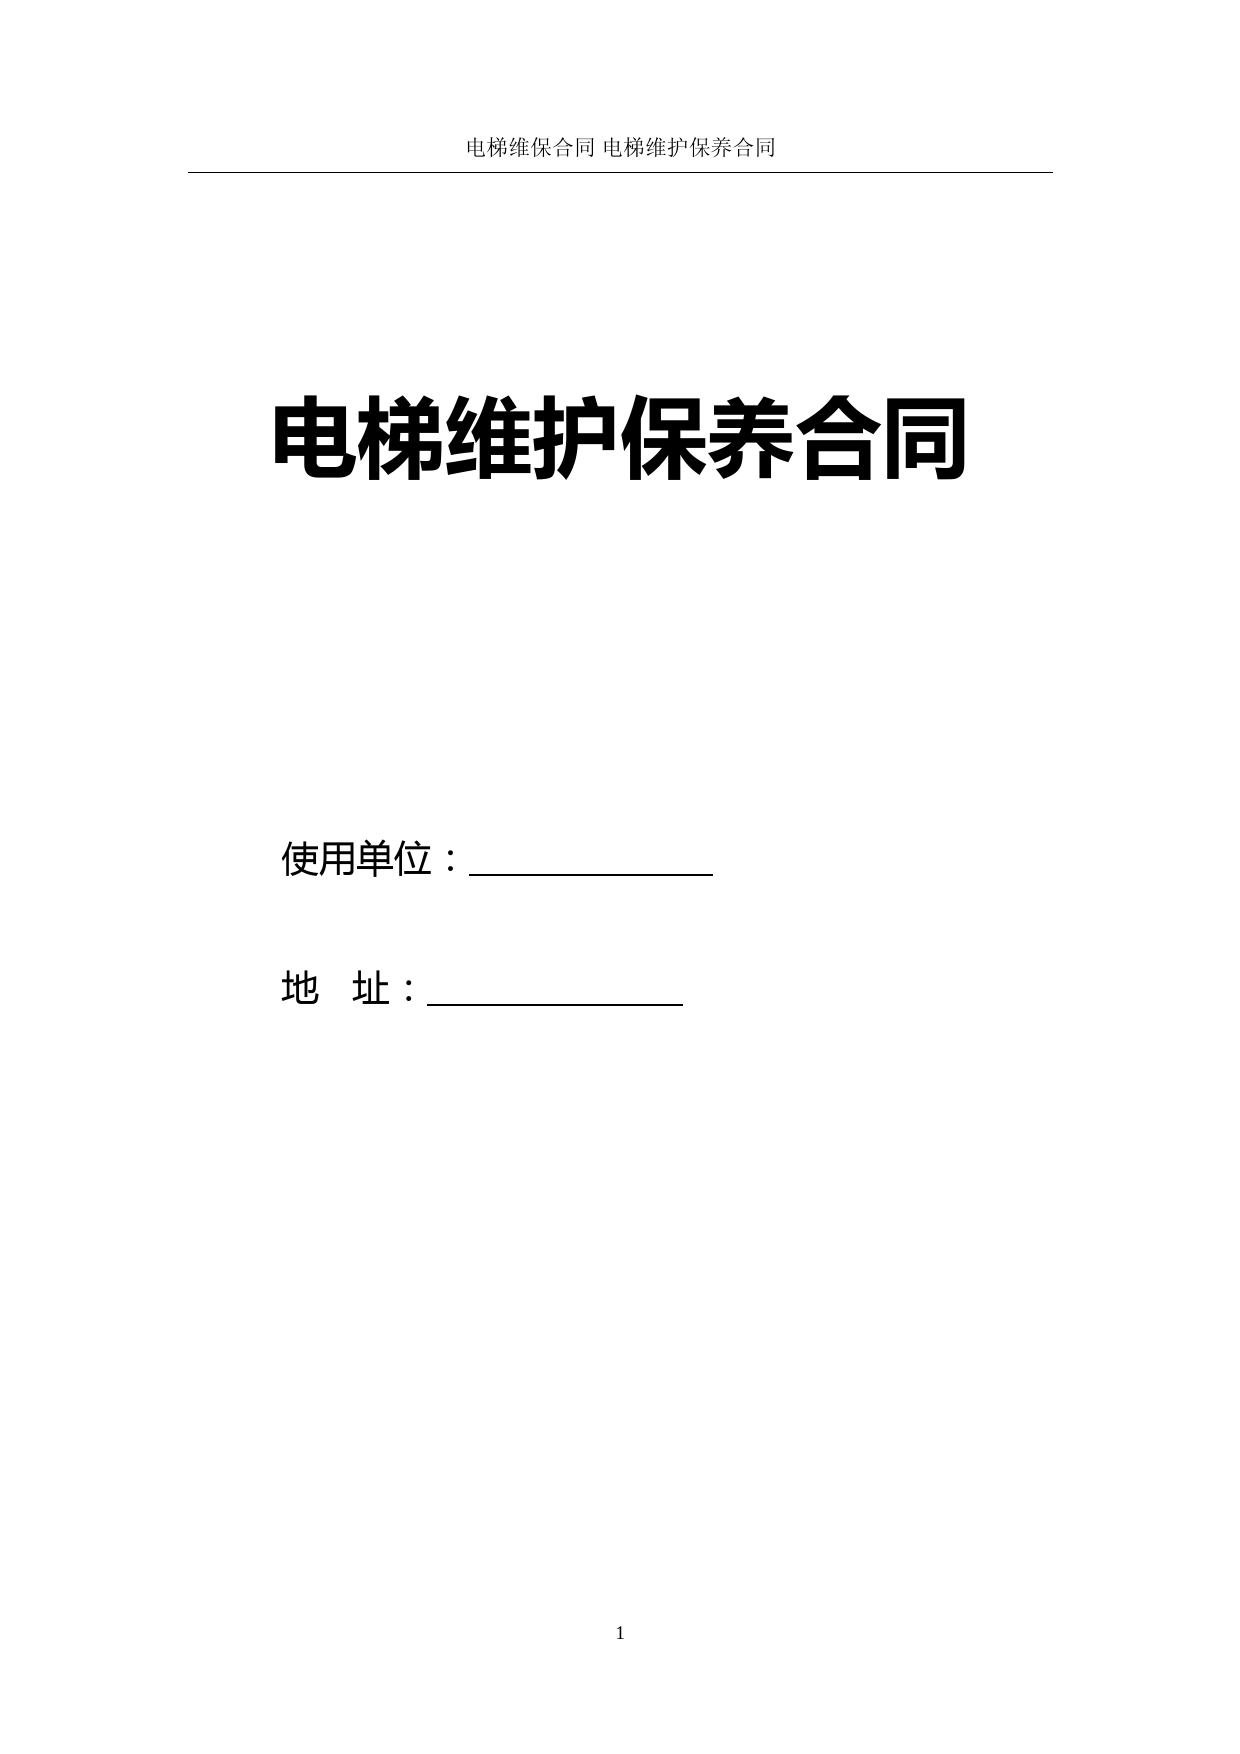 电梯维保合同协议书(标准版)